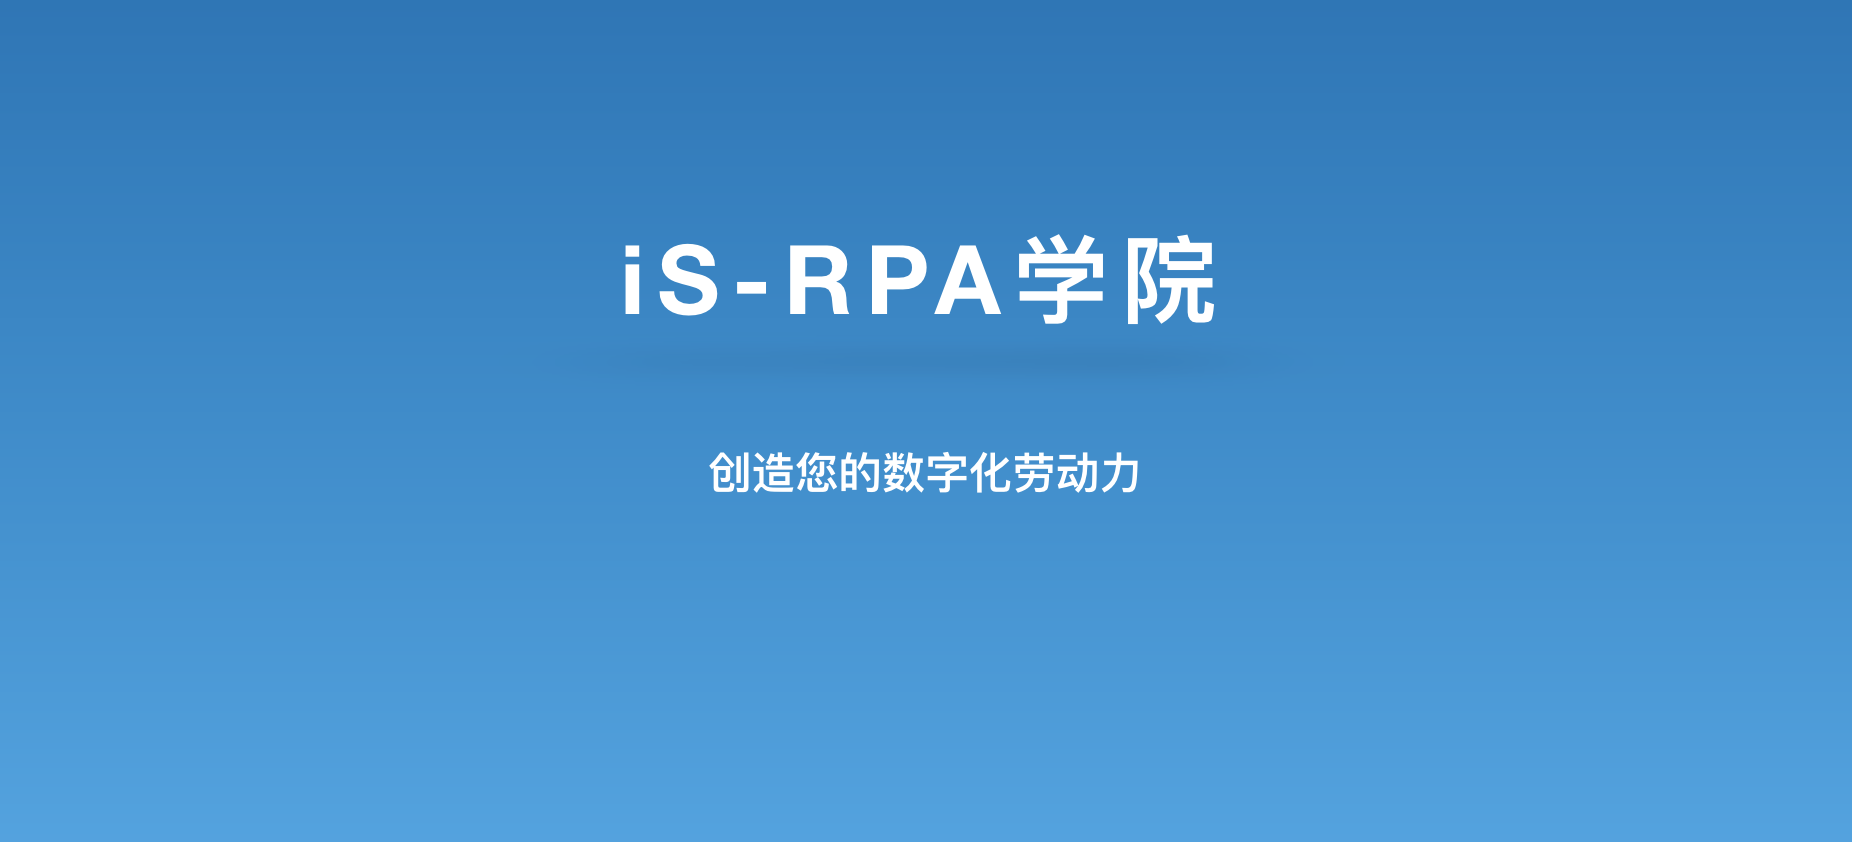 iS-RPA 学院 4 月份培训课程计划